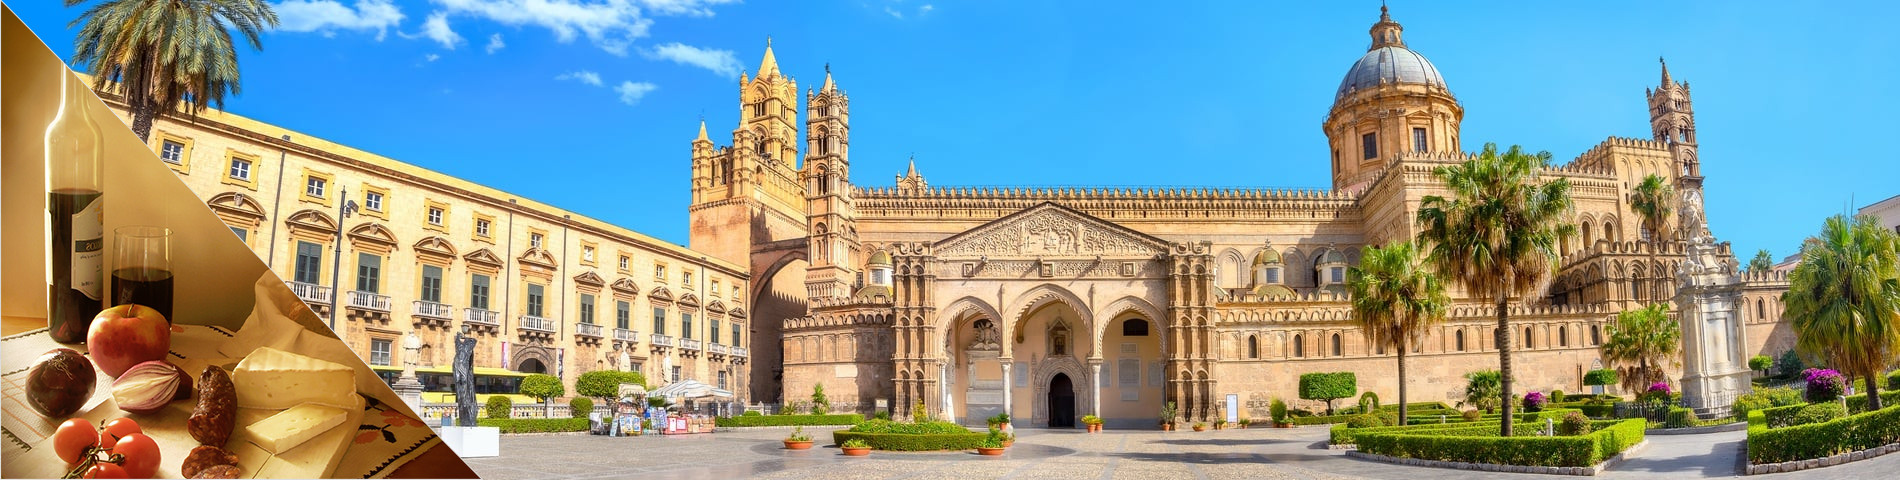 Palermo - Italia & kulttuuri